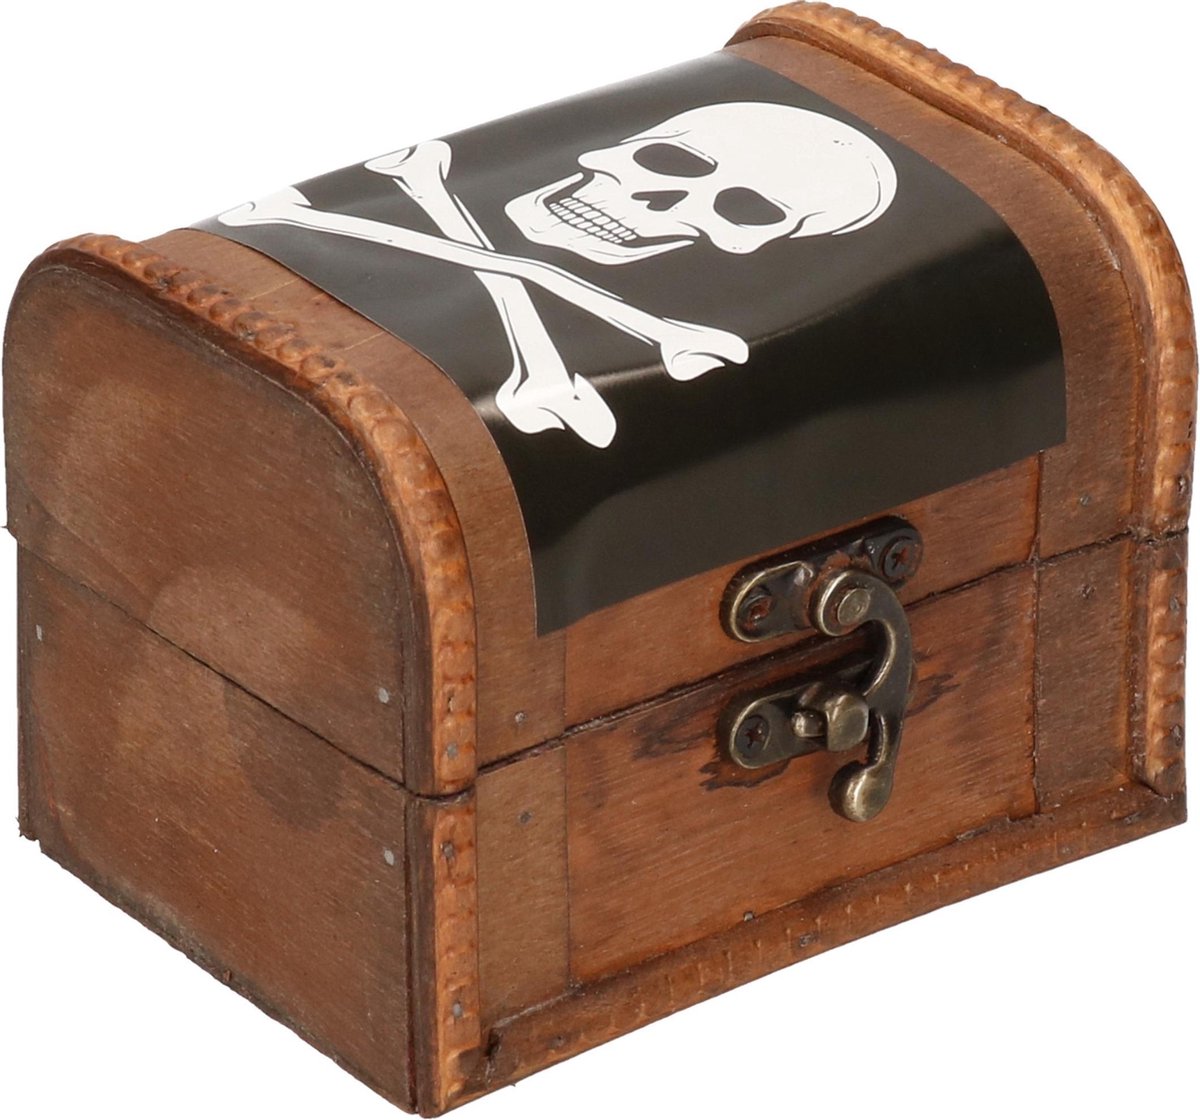 8 Contenants coffre au trésor Pirate 8 x 5,5 x 6 cm - Vegaooparty